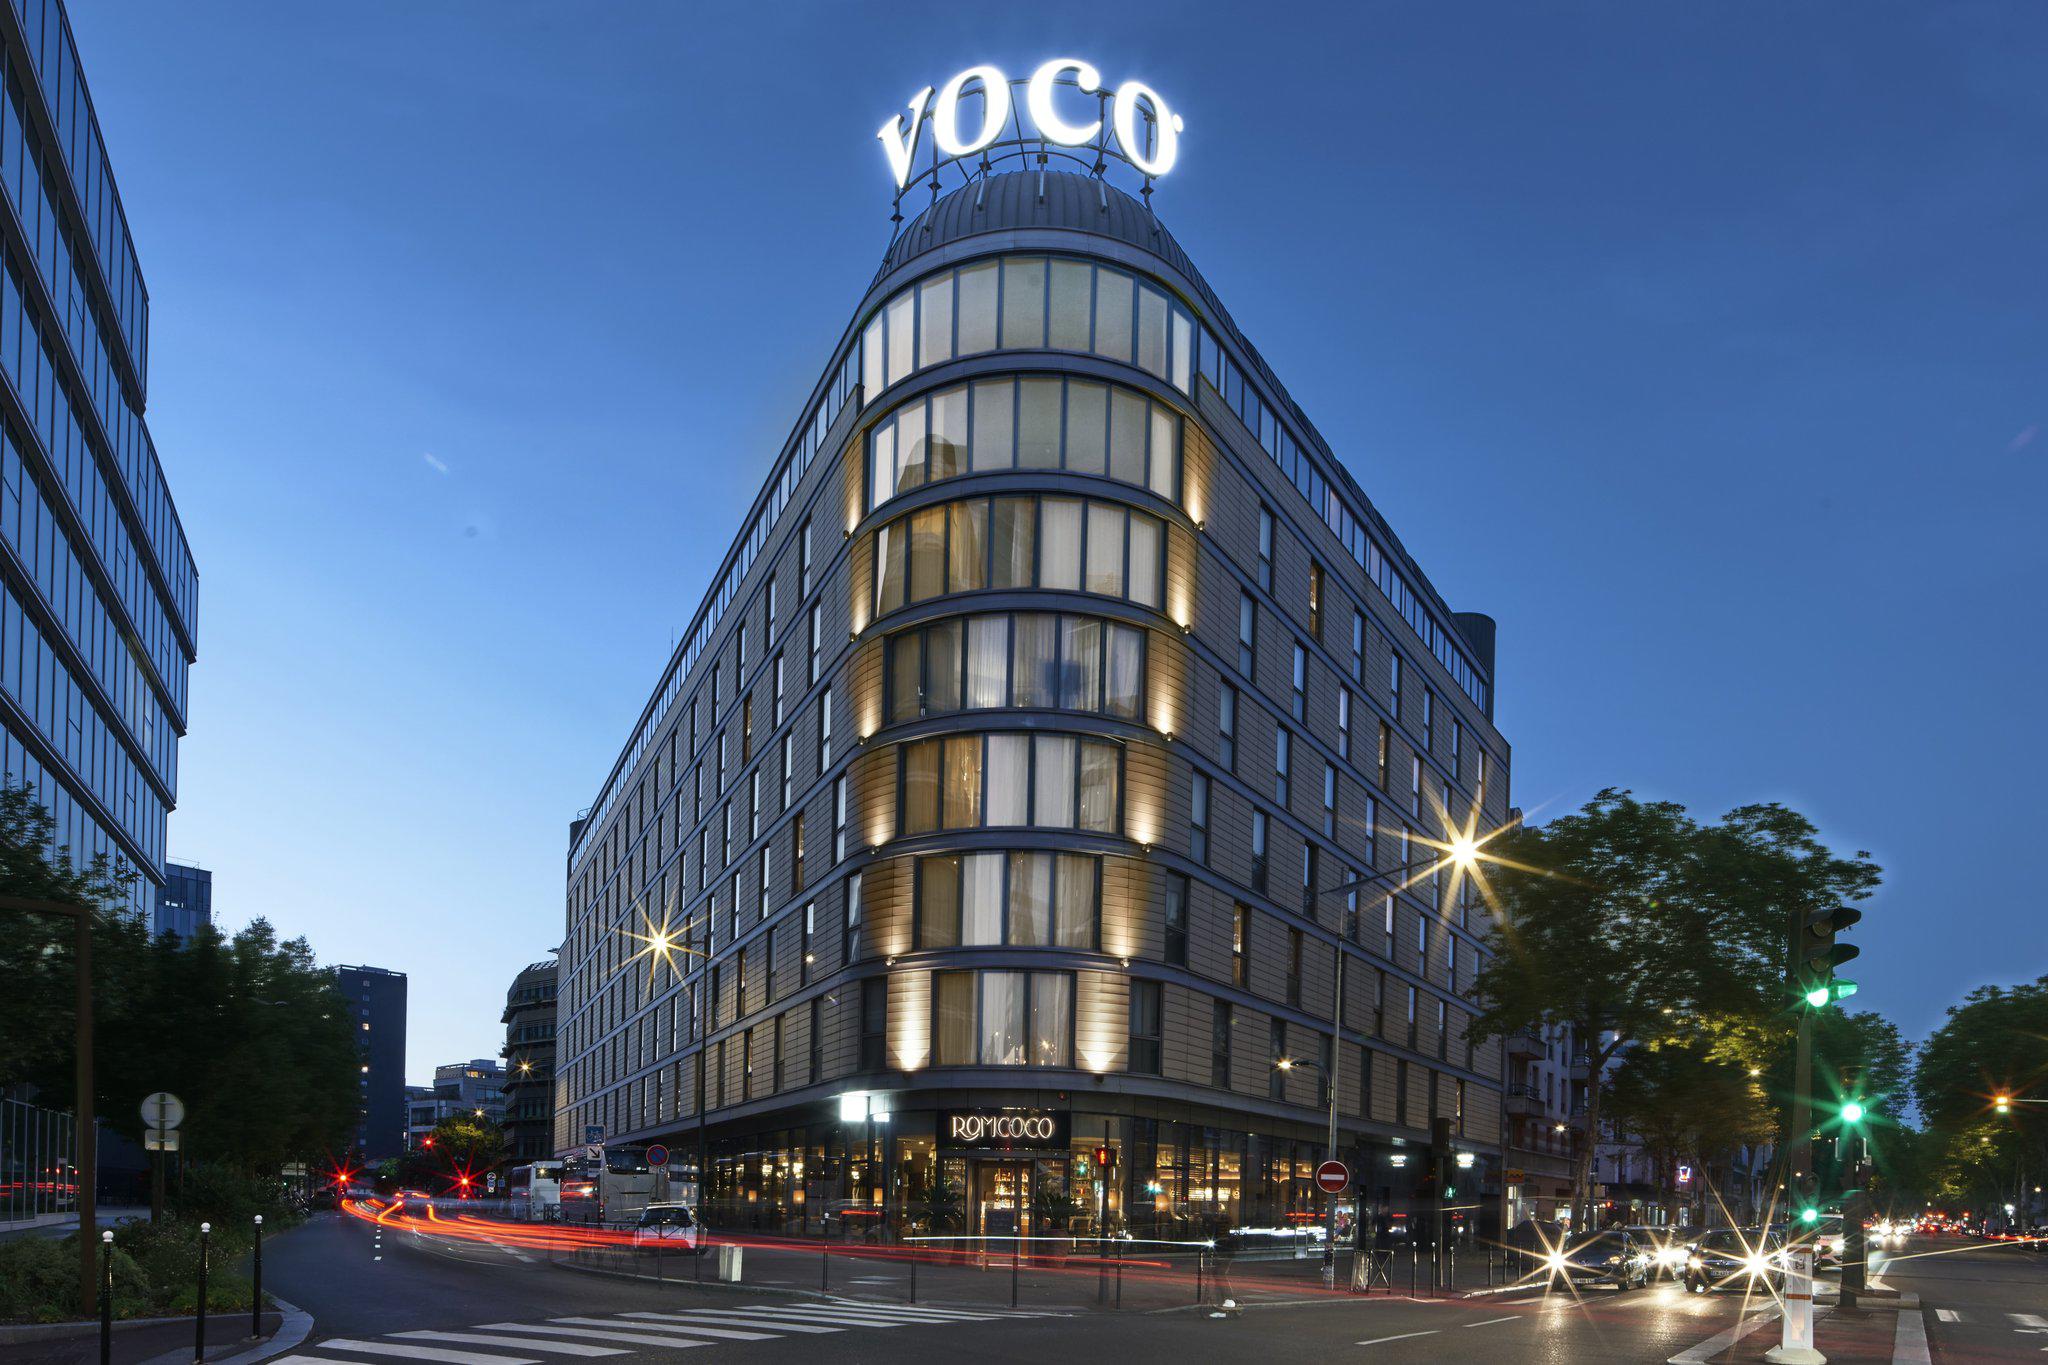 Images voco Paris - Porte de Clichy, an IHG Hotel